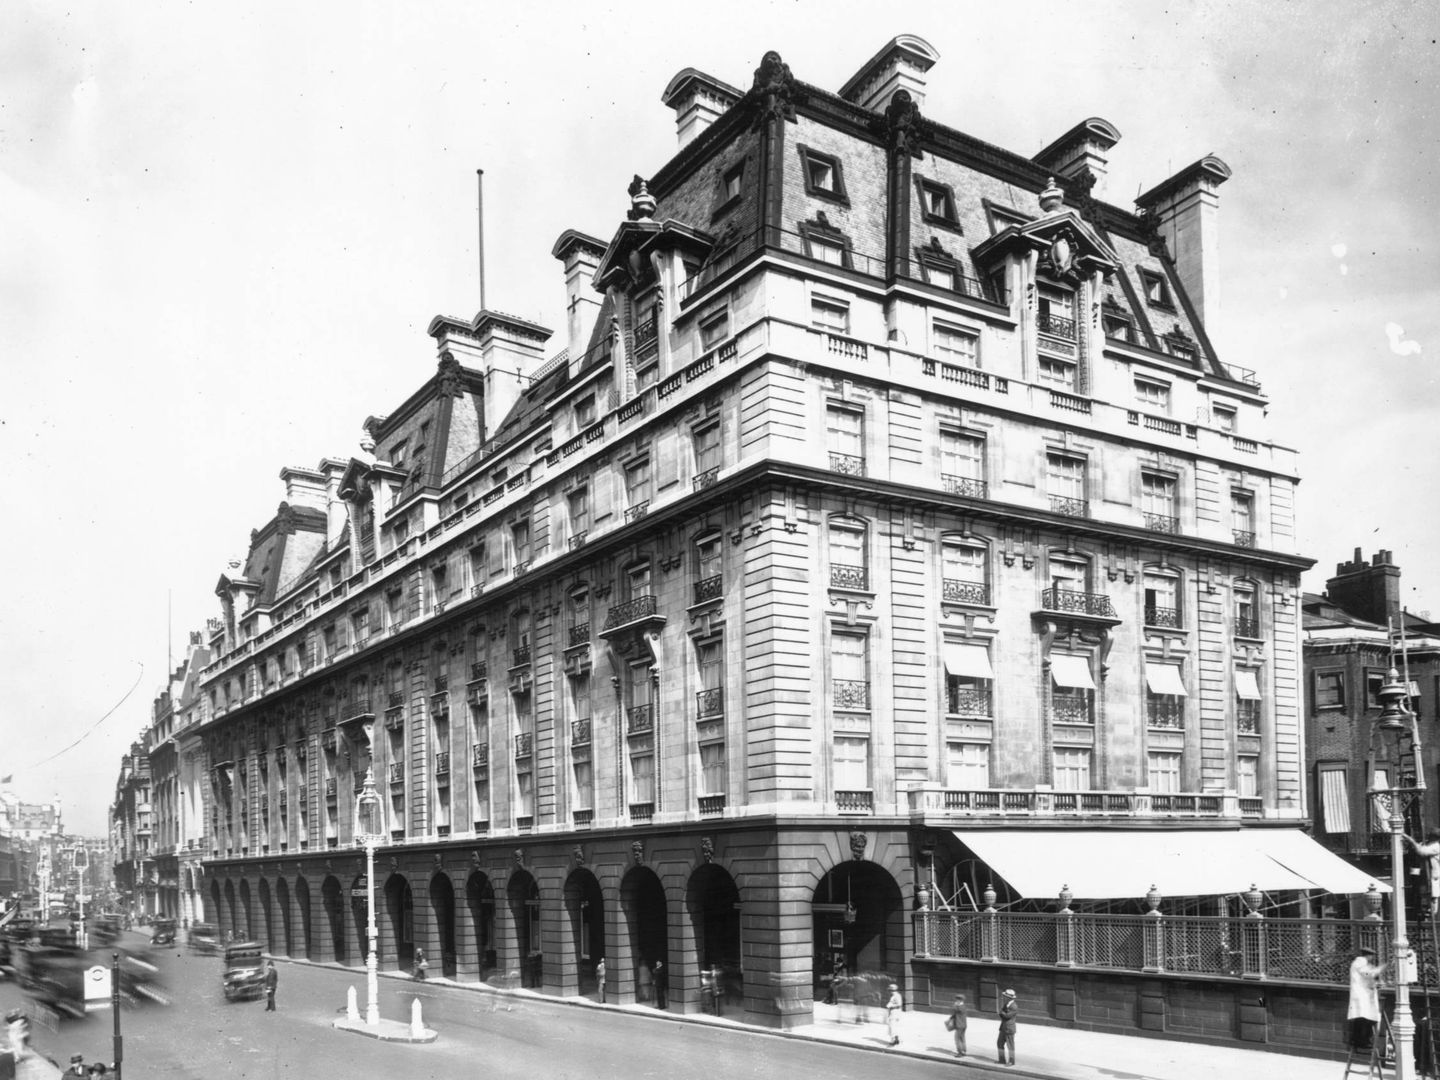  El hotel londinense, en una imagen de 1924. (Getty)